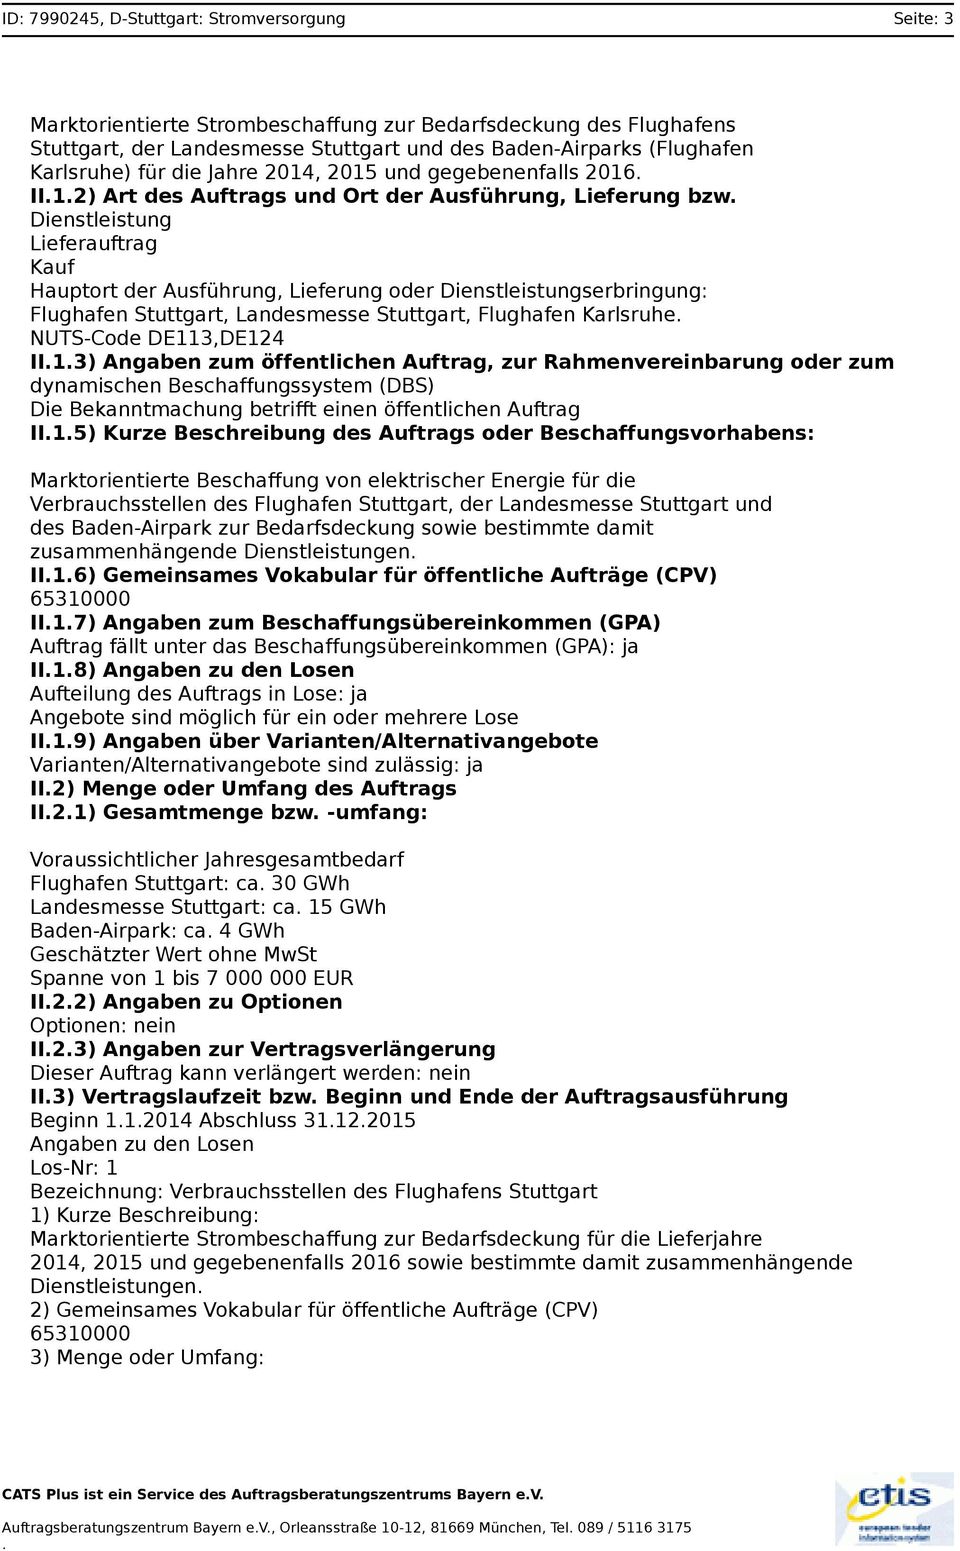 Dienstleistungserbringung: Flughafen Stuttgart, Landesmesse Stuttgart, Flughafen Karlsruhe NUTS-Code DE113,DE124 II13) Angaben zum öffentlichen Auftrag, zur Rahmenvereinbarung oder zum dynamischen